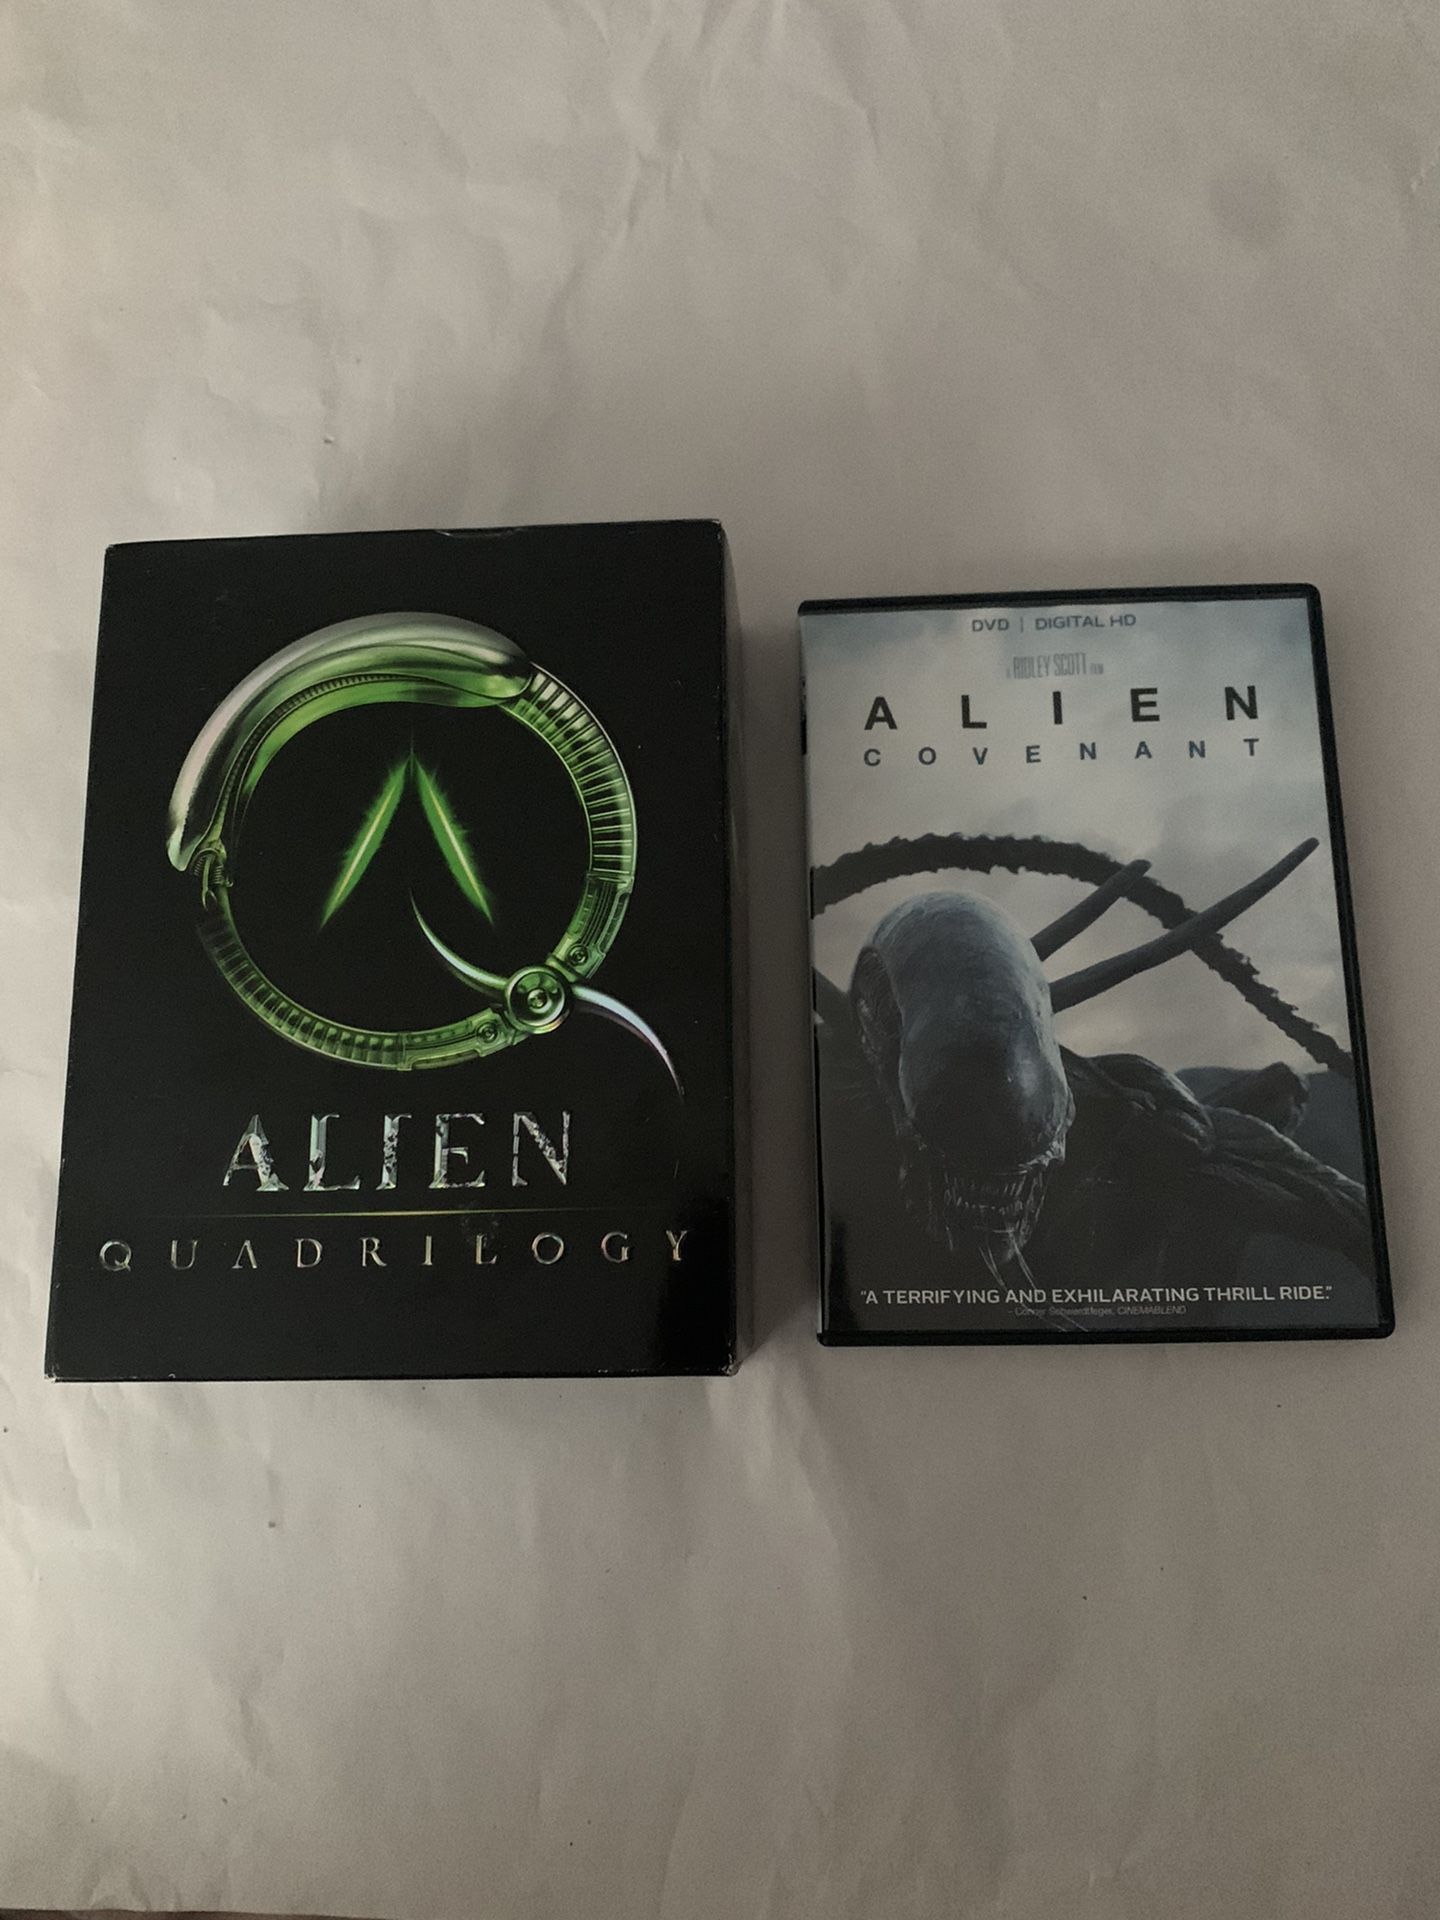 Alien Quadrilogy (9 disc) and Alien Covenant DVD Bundle